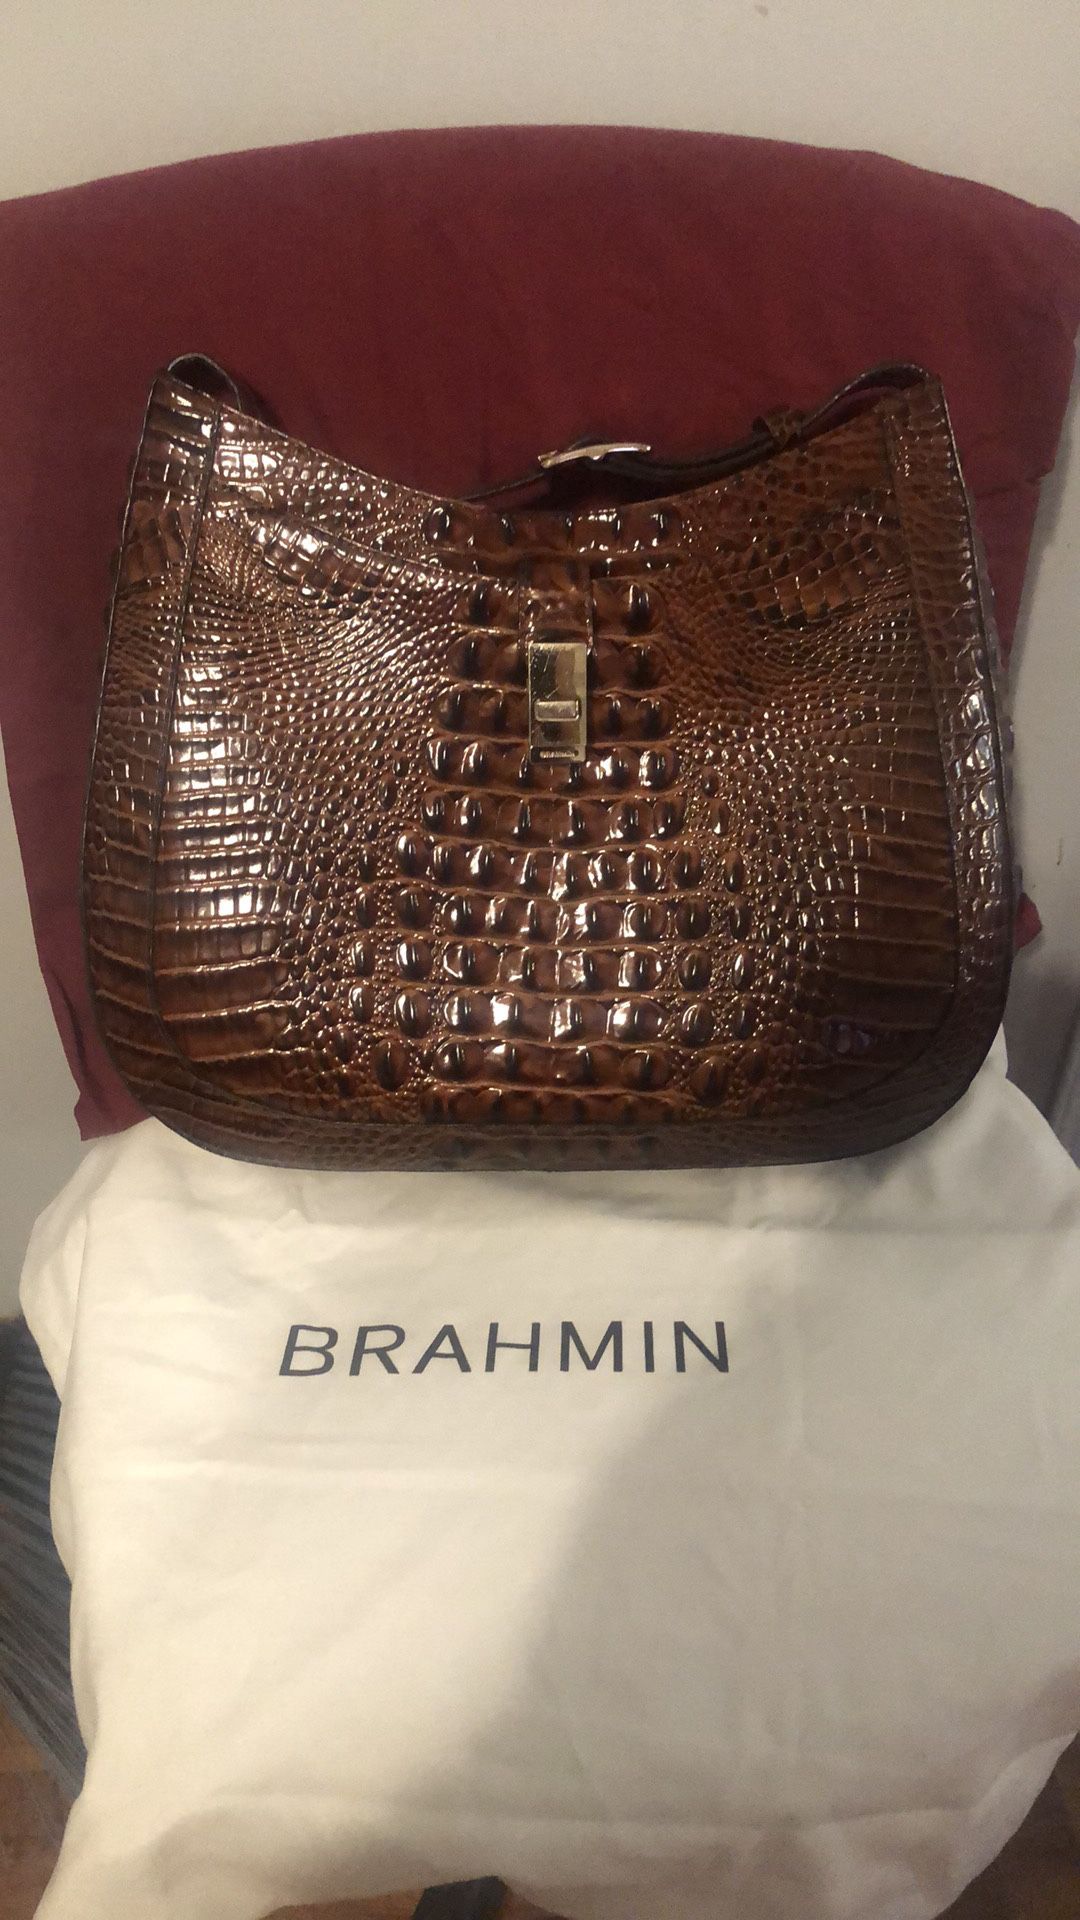 Brahmin Purse for Sale in Goose Creek, SC - OfferUp